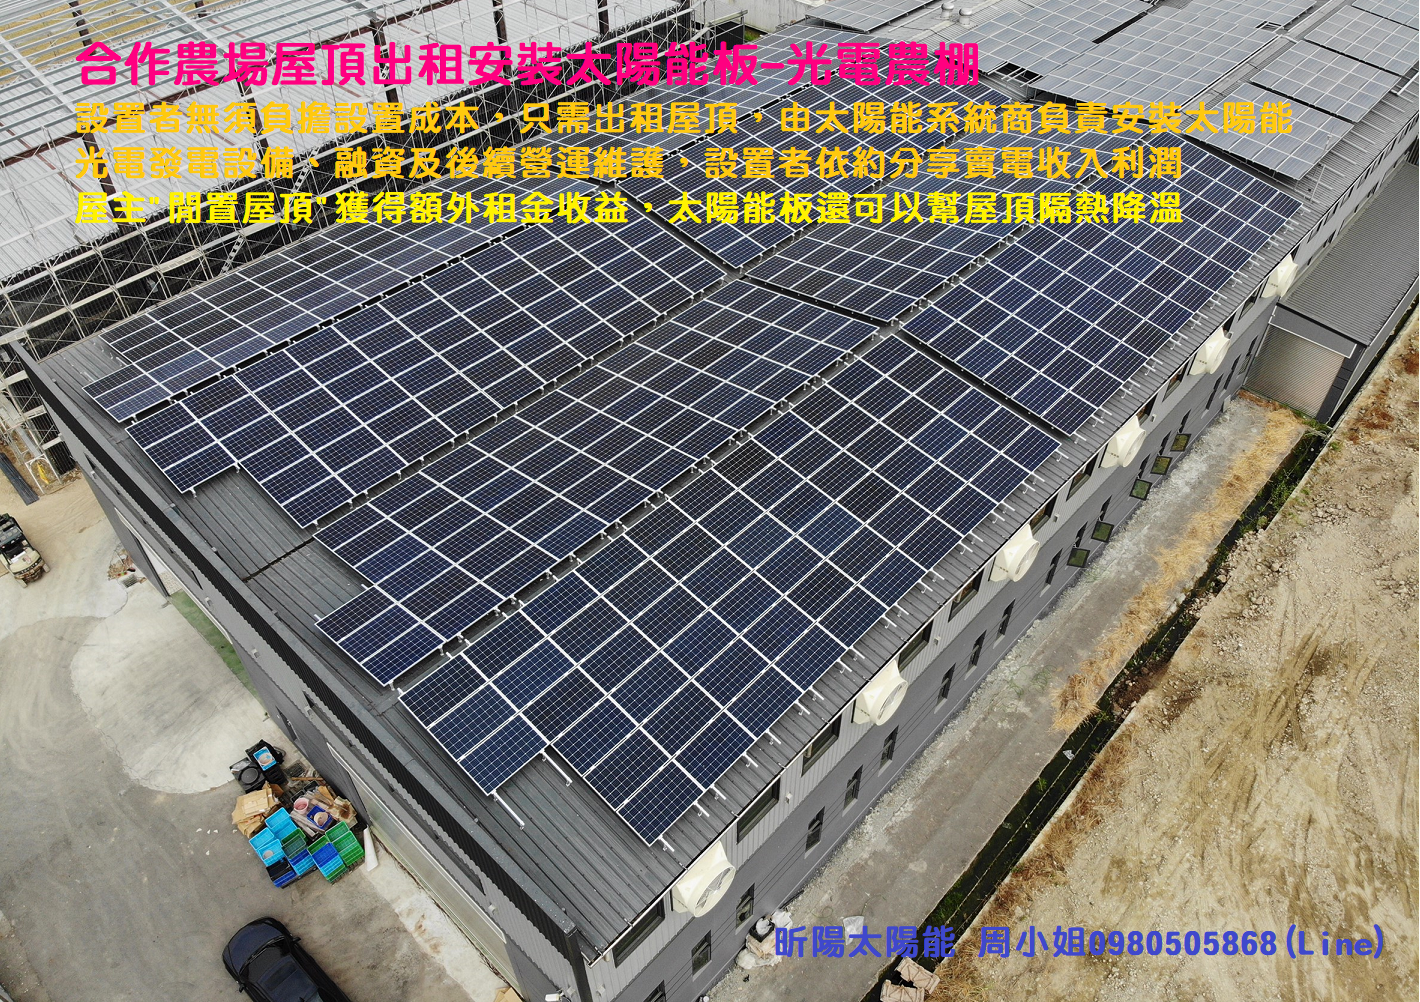 1601000949_雲林太陽能 合作農場太陽光電閒置屋頂出租裝太陽能板 光電農棚 鐵皮屋頂隔熱降溫 承租屋頂 免費太陽能發電系統.png